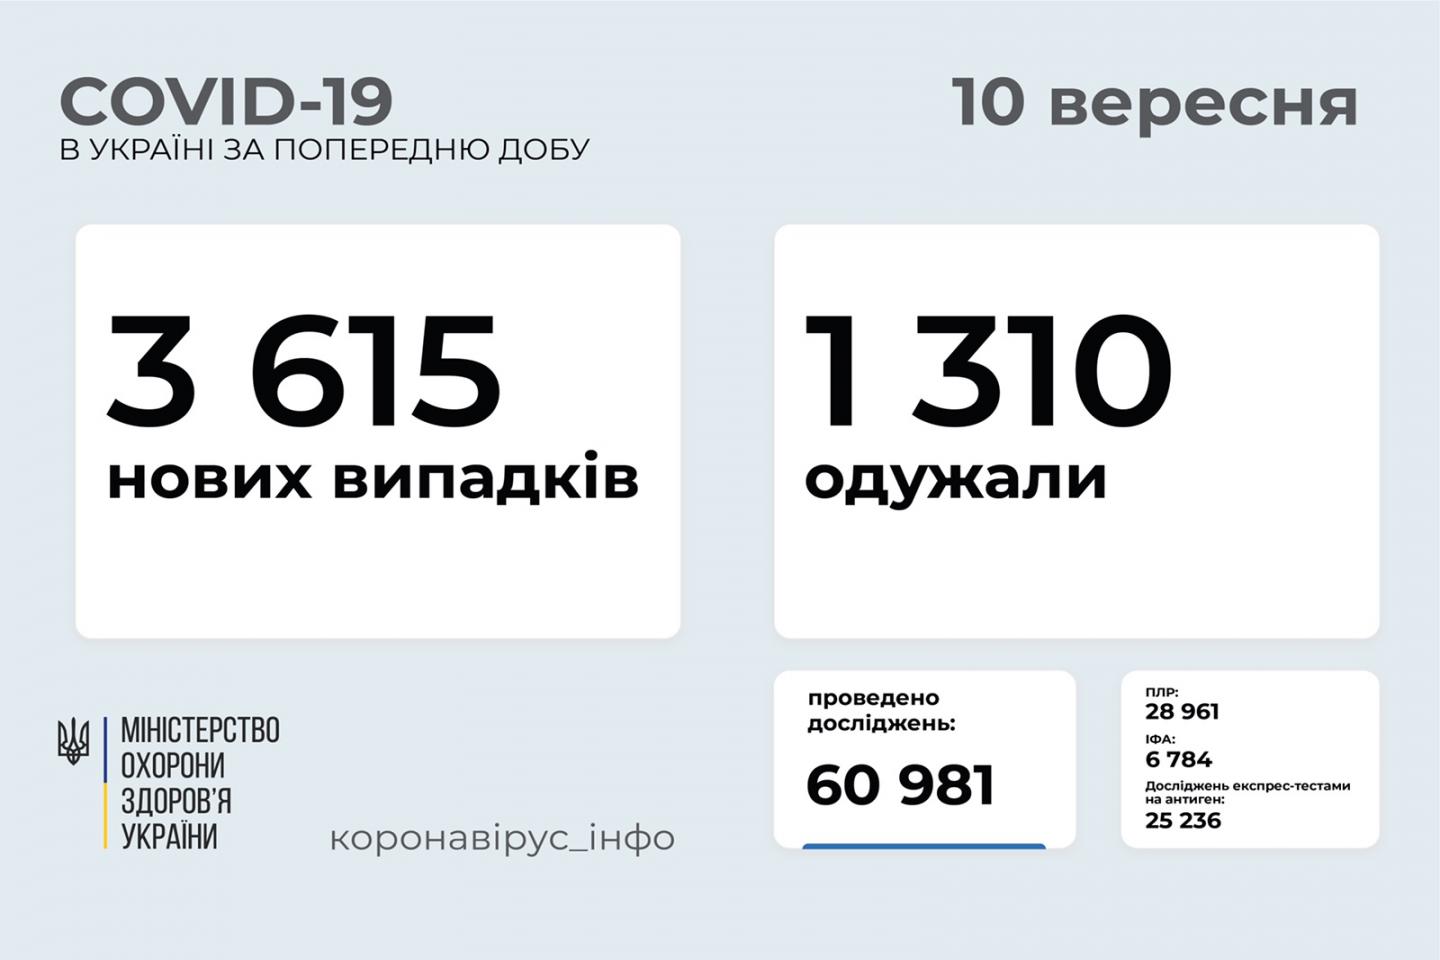 http://dunrada.gov.ua/uploadfile/archive_news/2021/09/10/2021-09-10_9538/images/images-17532.jpg